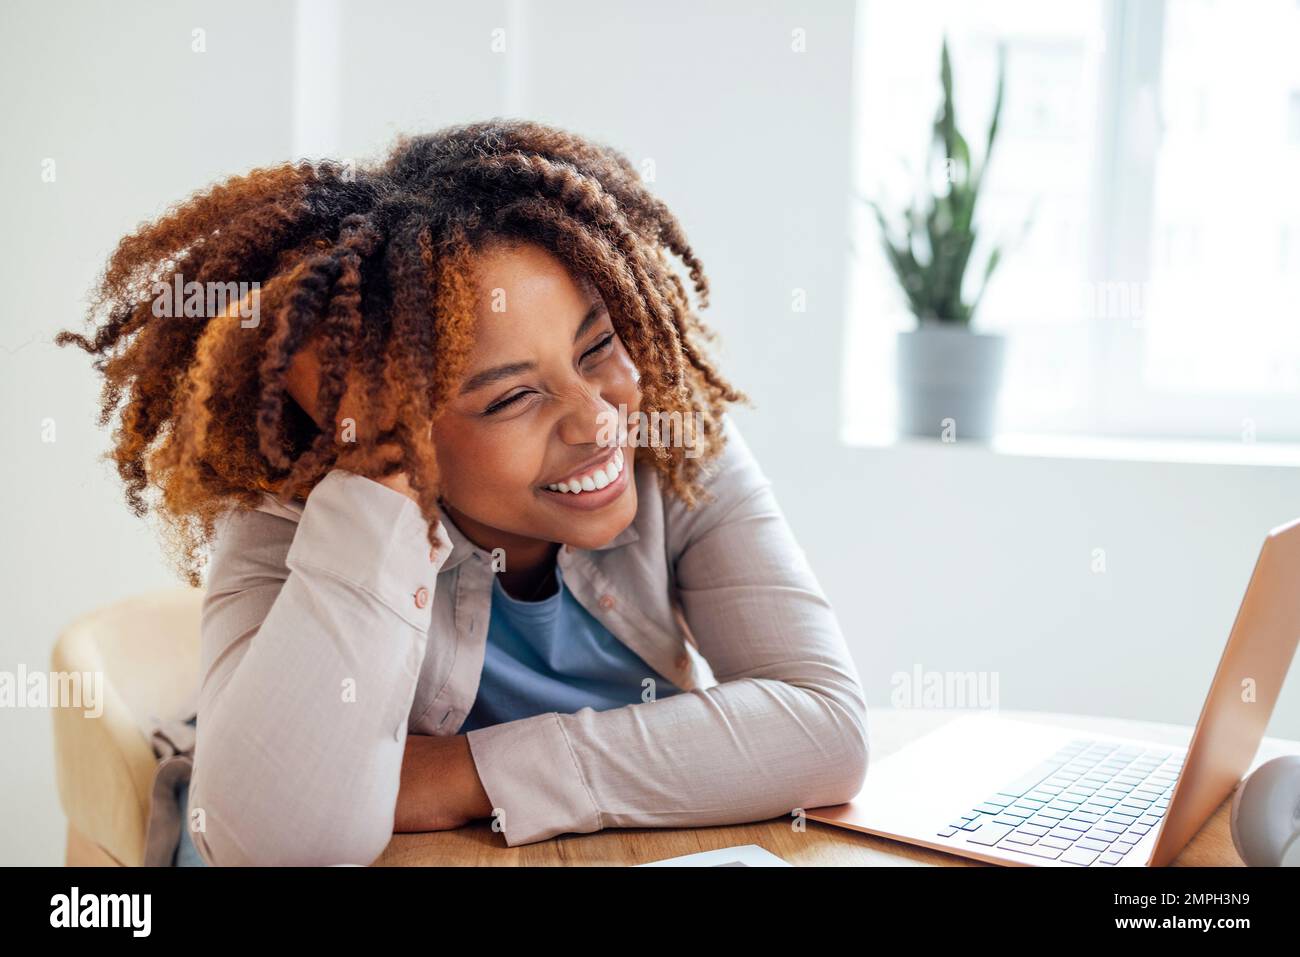 Una giovane afroamericana sta lavorando su un computer portatile. Una studentessa focalizzata sta guardando lo schermo del computer e guardando il webinar o facendo videochat Foto Stock